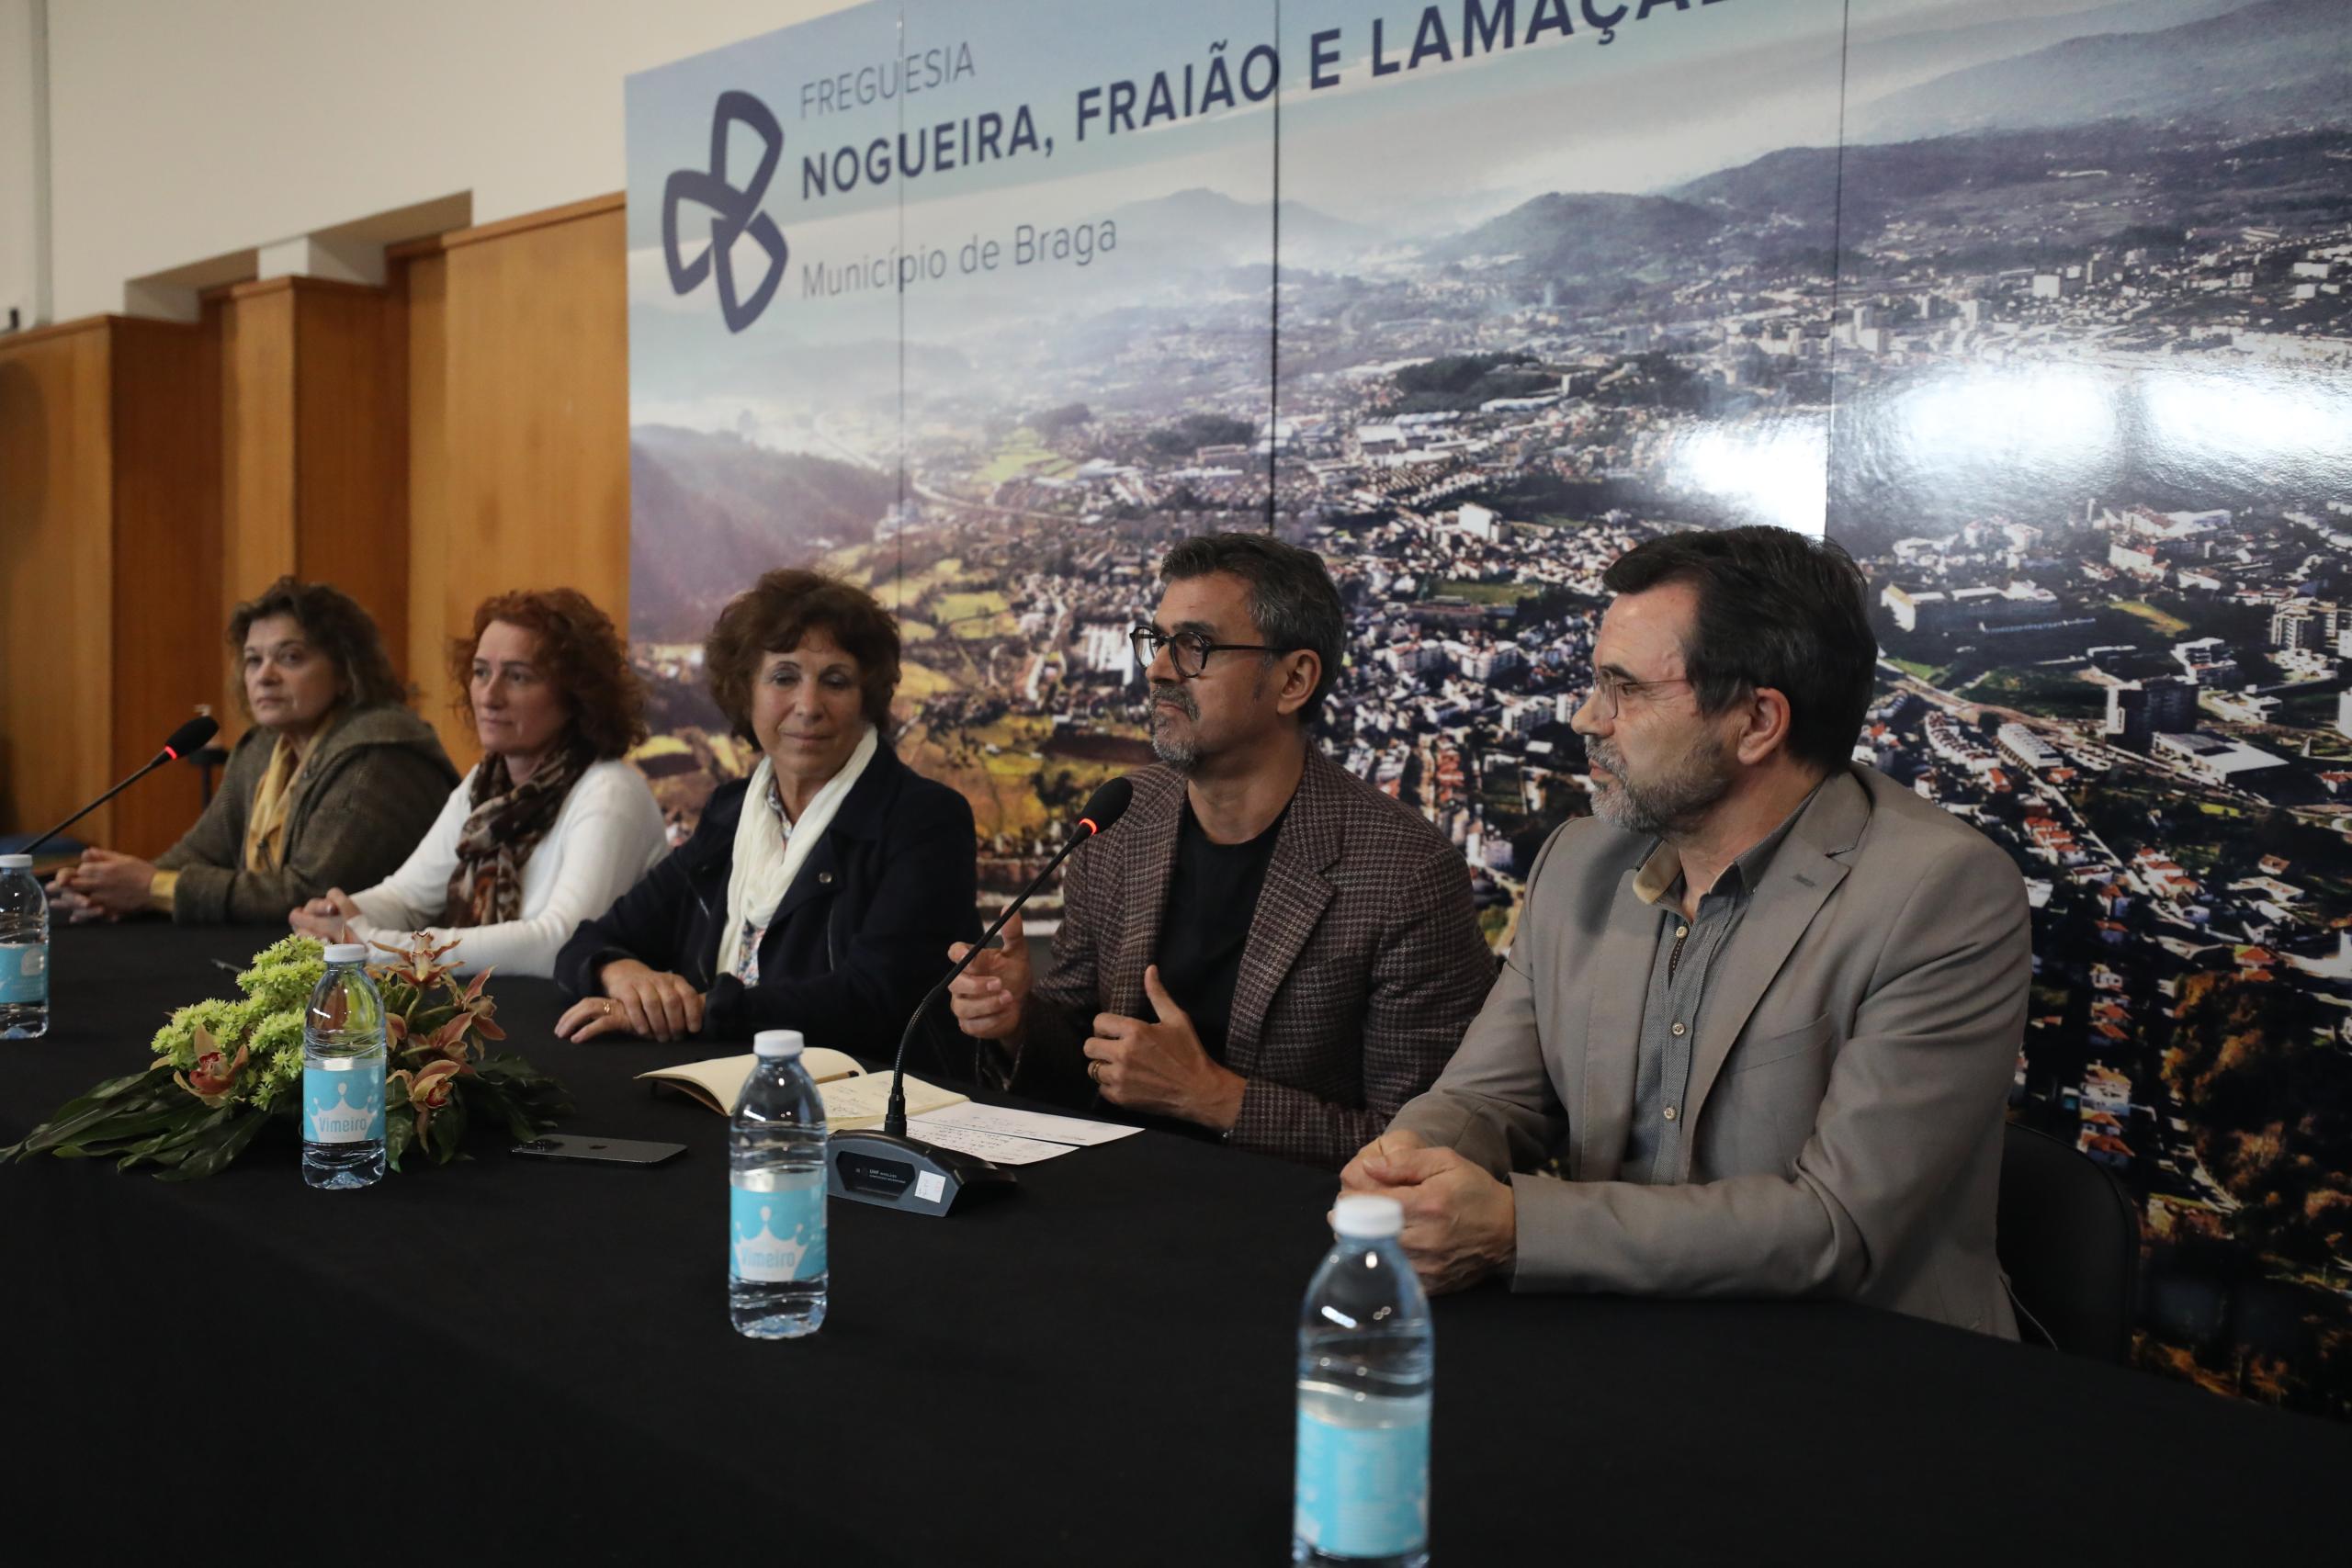 Nogueira, Fraião e Lamaçães assina protocolo para levar teatro aos jovens